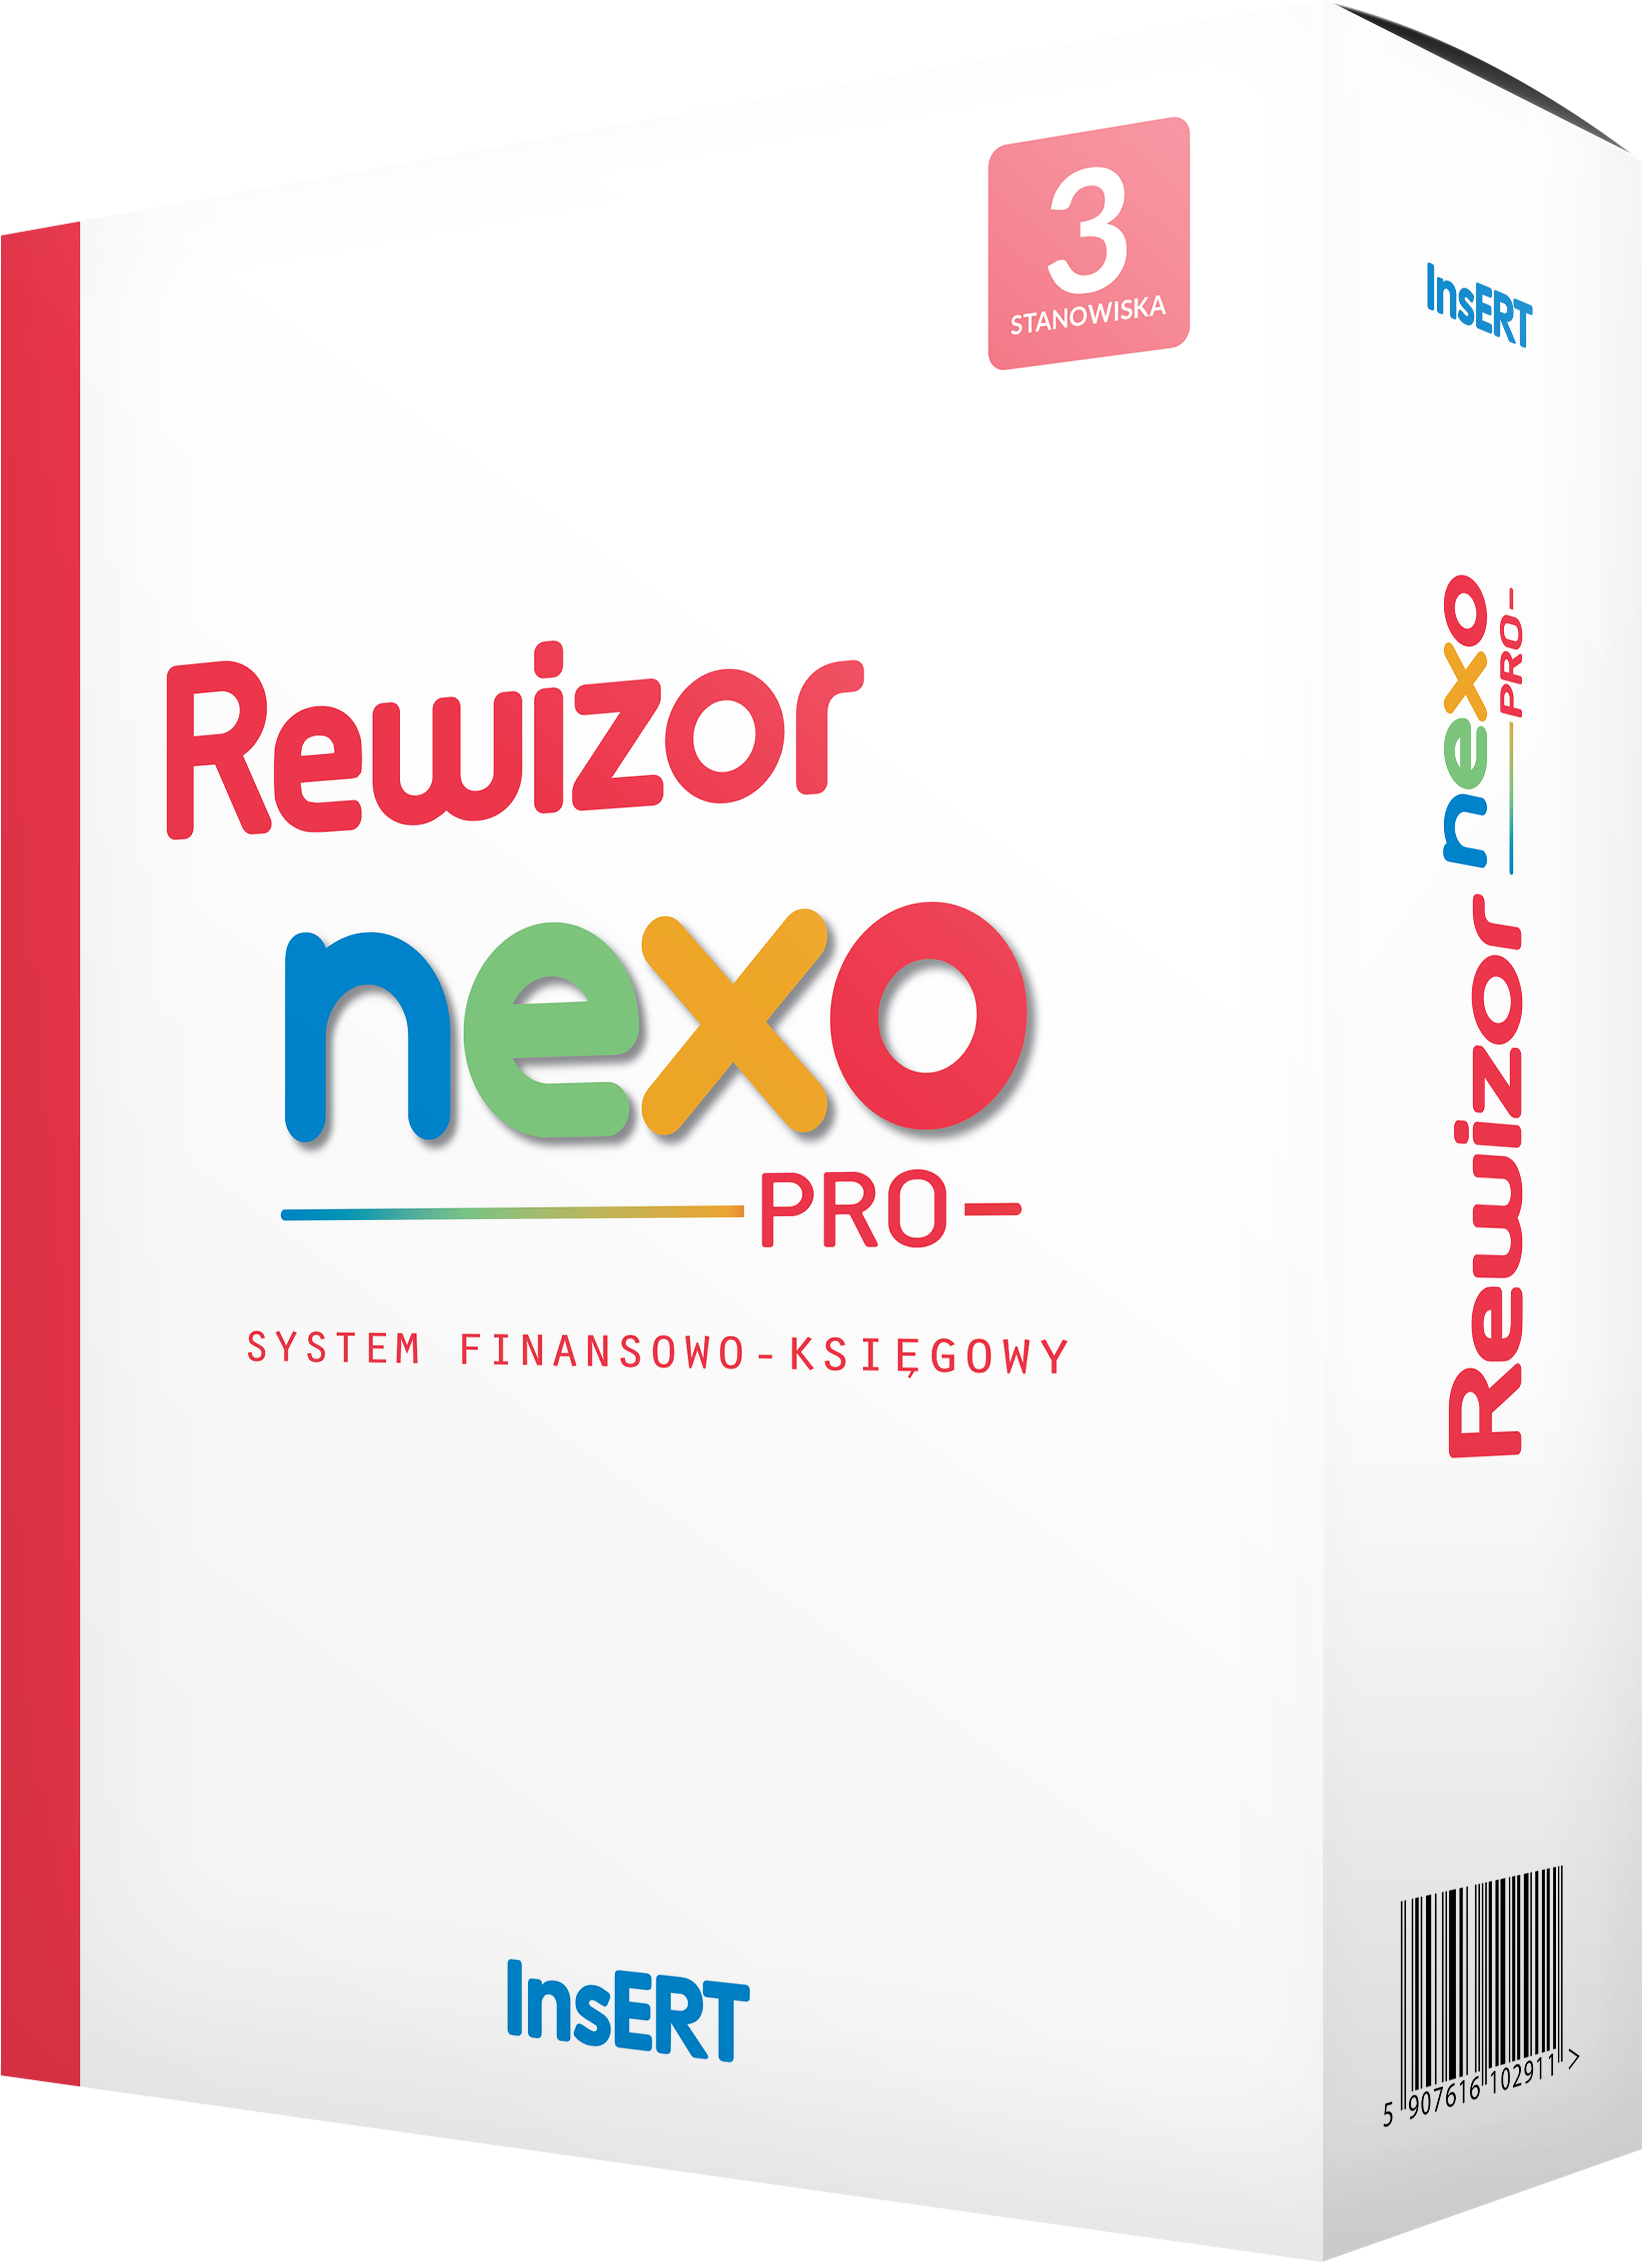 Rewizor nexo PRO 3 stanowiska upgrade z GT Rewizor